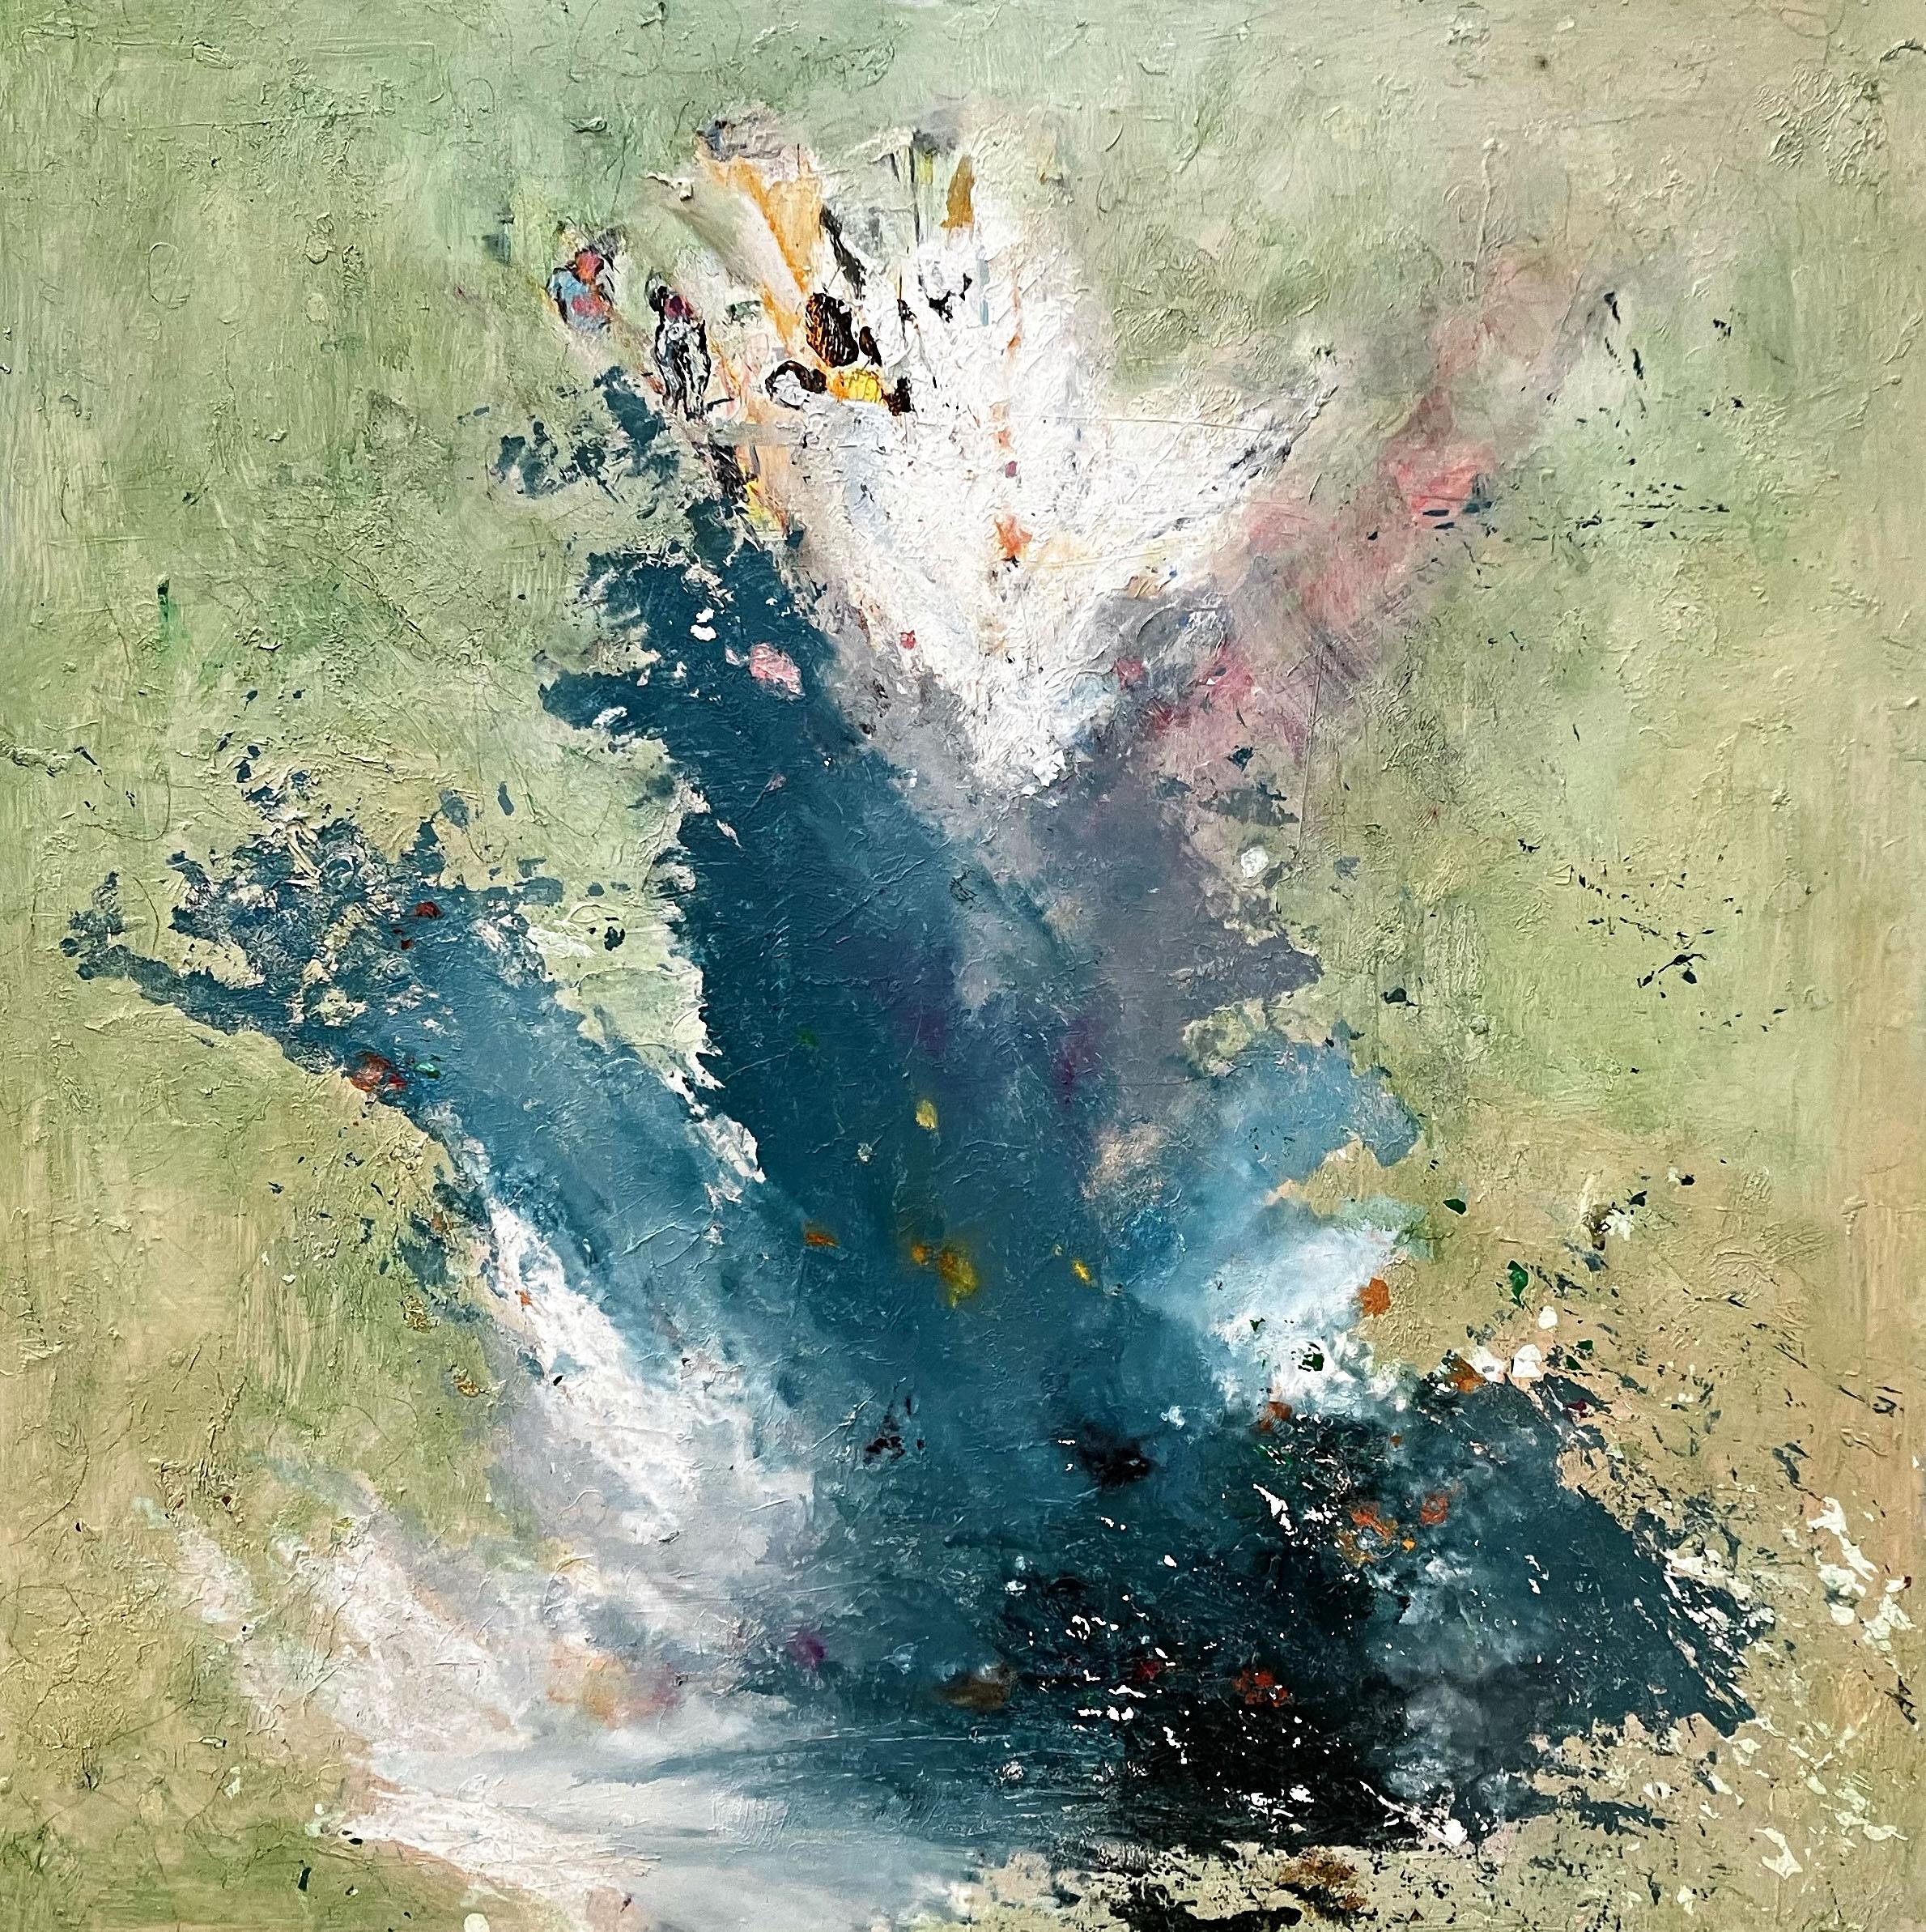 Abstract Painting C. Dimitri - Mouchoir océanique, coup de pinceau dynamique dans une peinture abstraite vert pâle, bleu, blanc